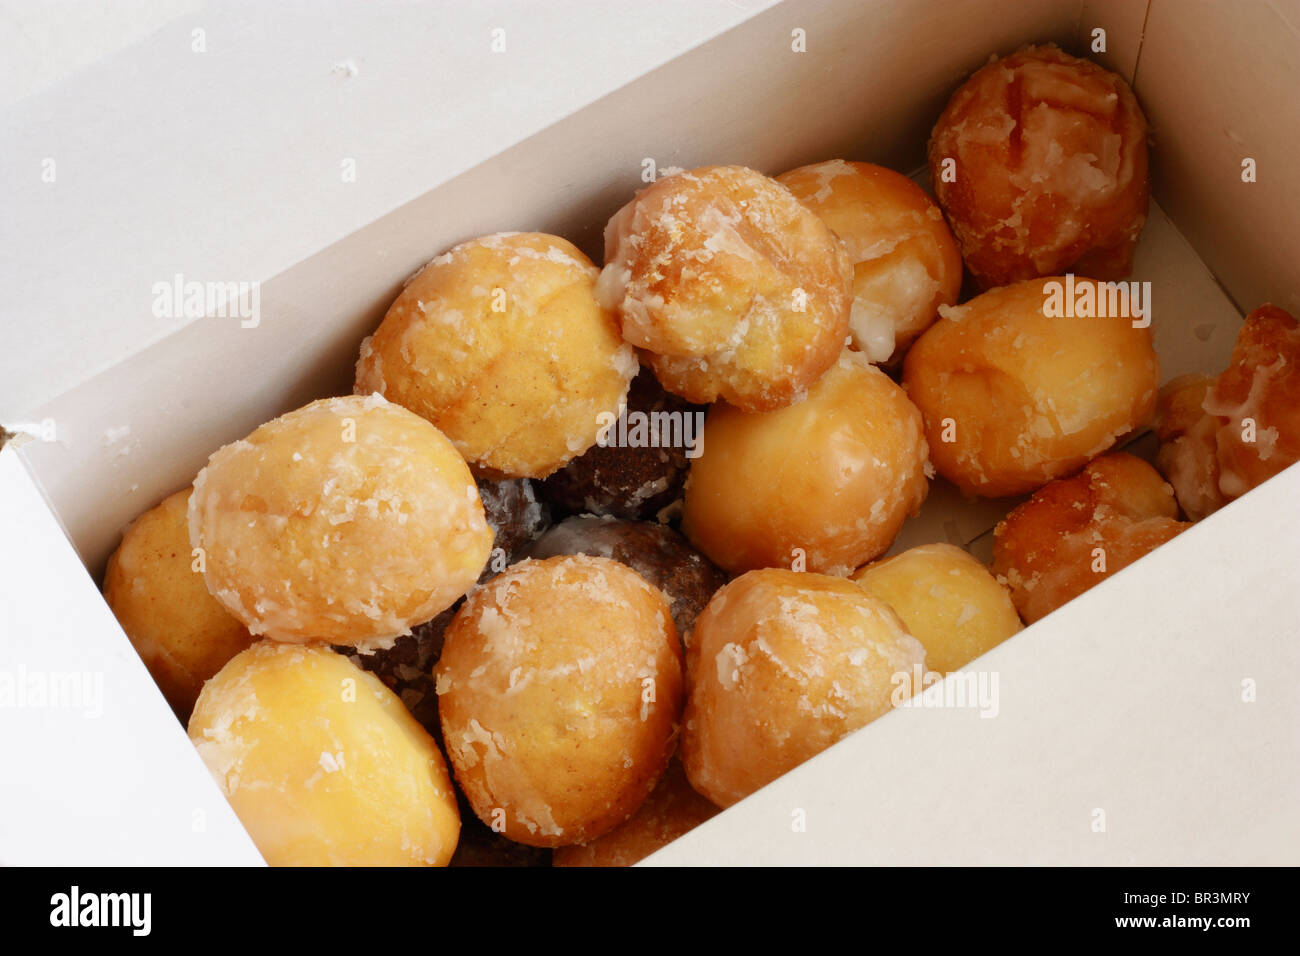 Box of various donut holes Stock Photo